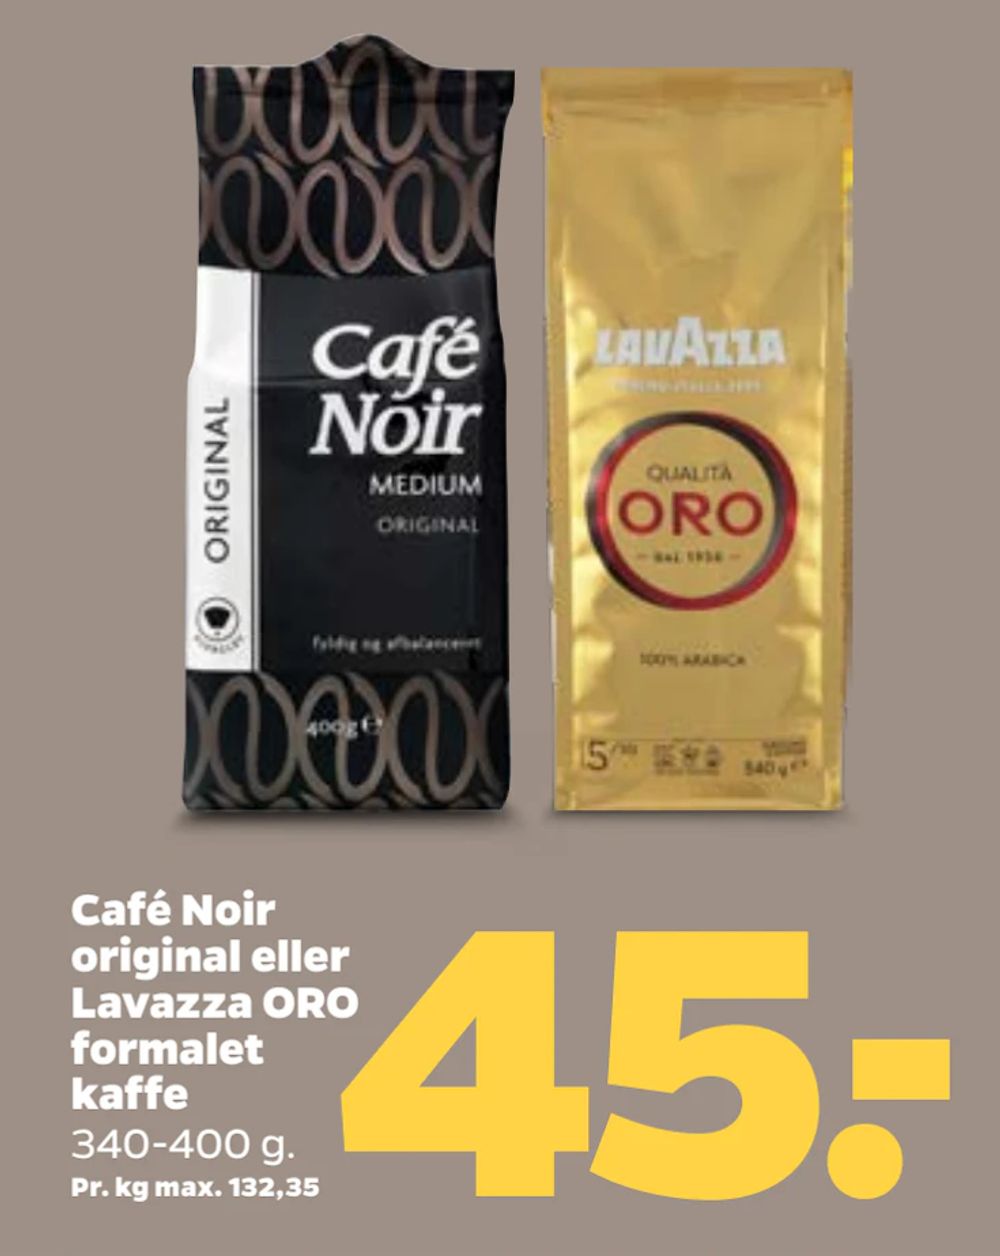 Tilbud på Café Noir original eller Lavazza ORO formalet kaffe fra Netto til 45 kr.